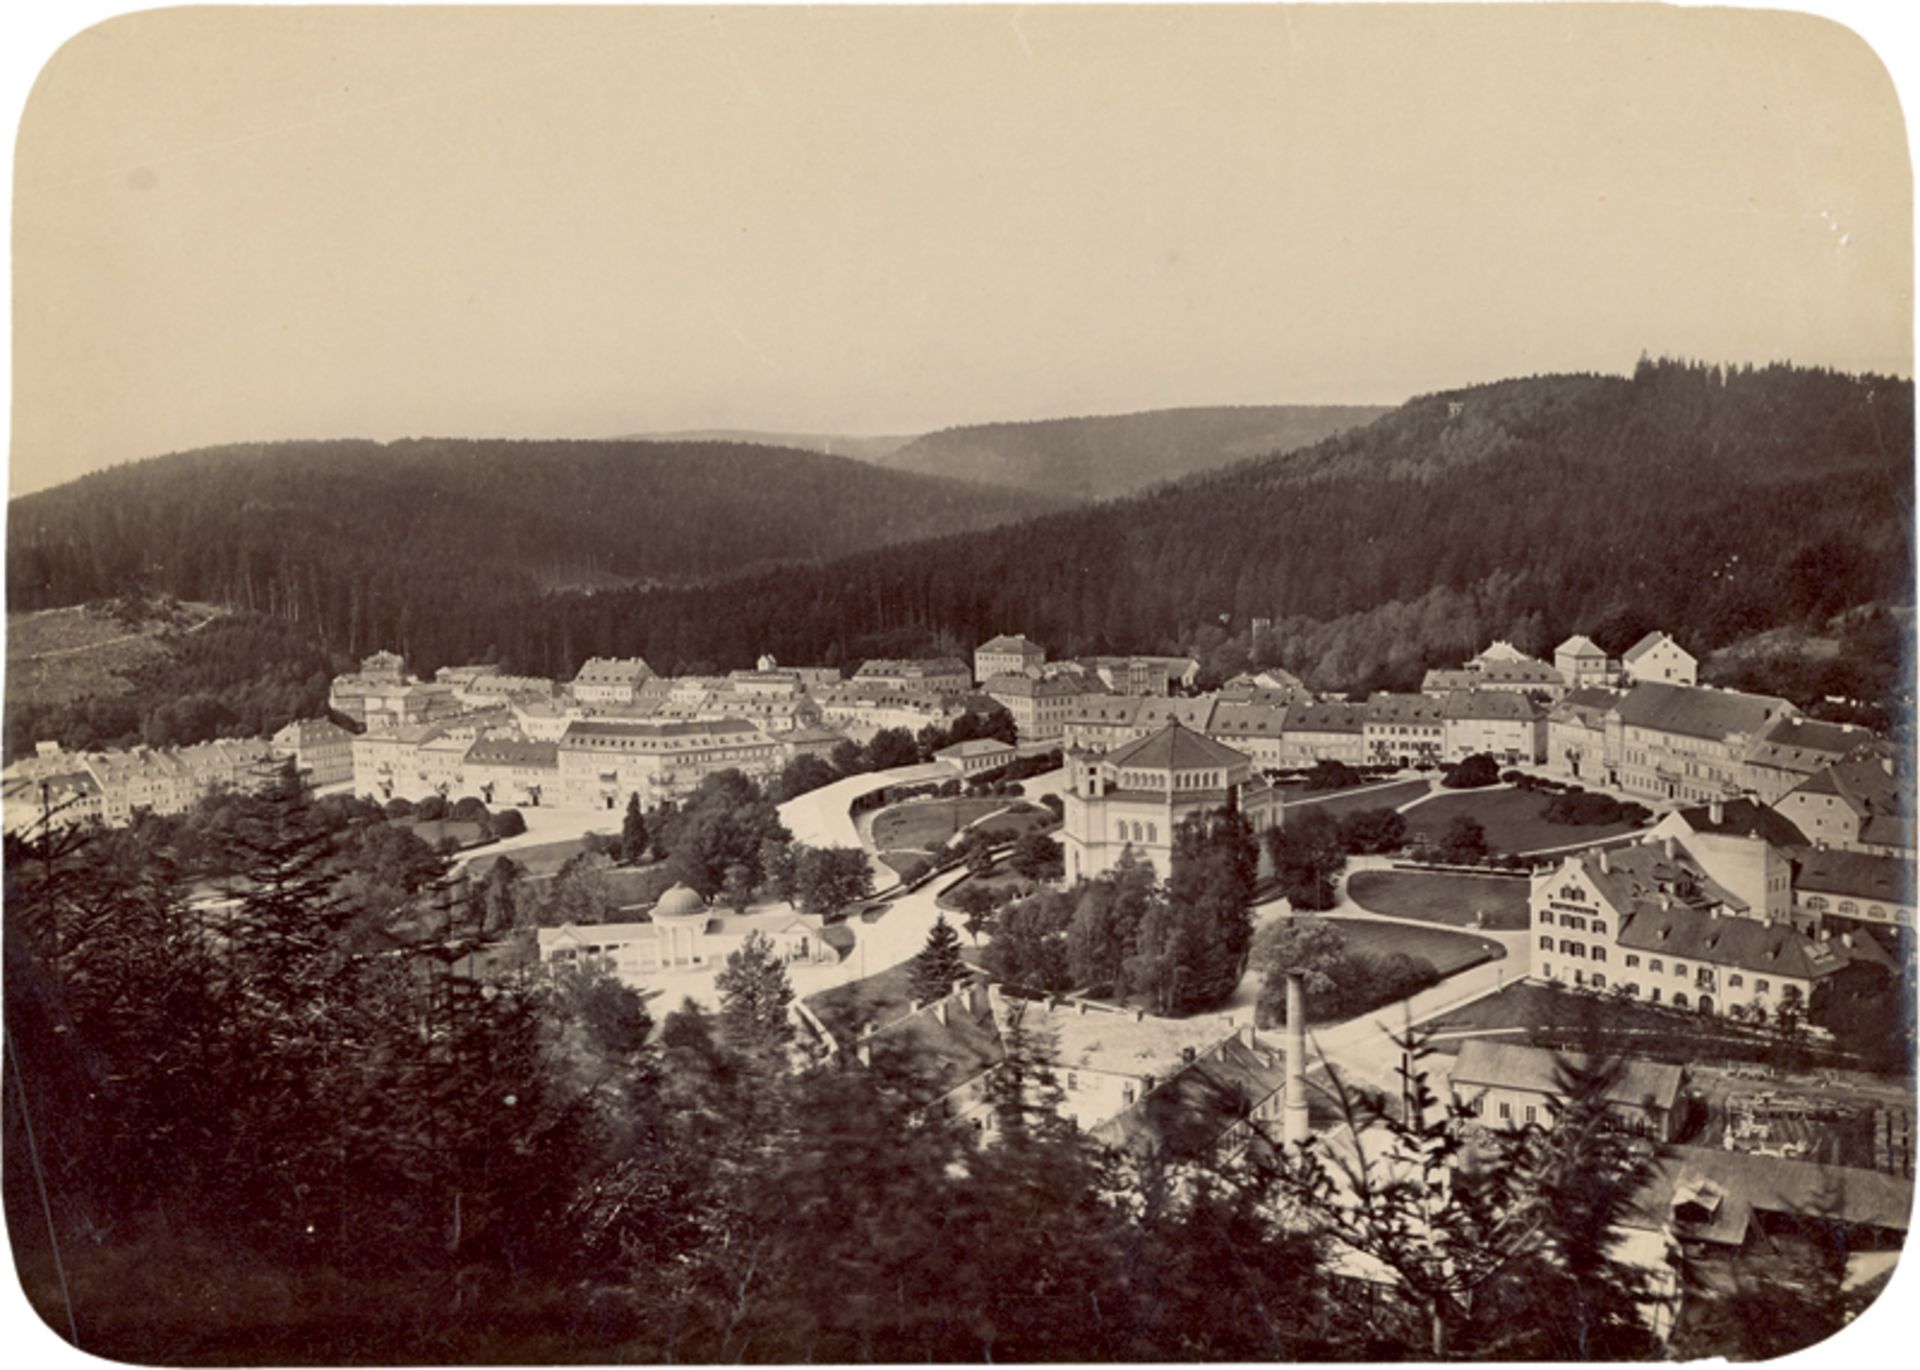 Karlsbad: Early views of Karlsbad